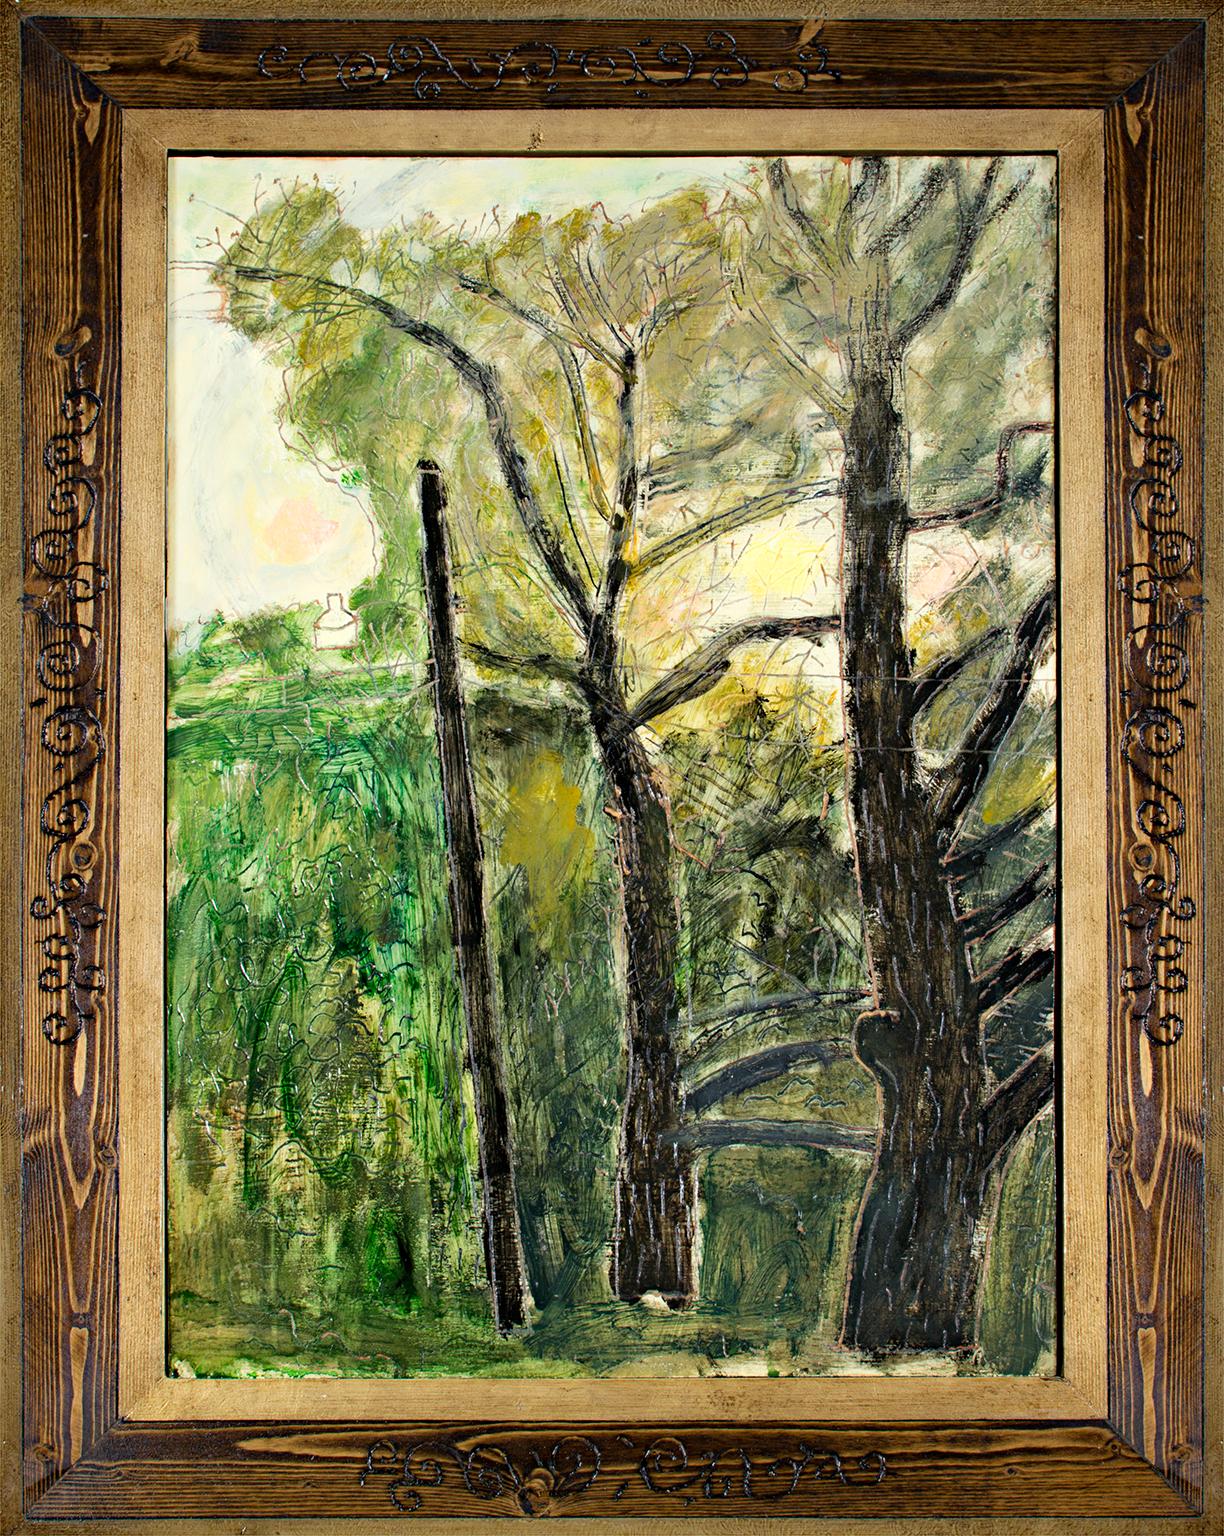 "Sunrise" est une peinture à l'huile originale de l'artiste du Wisconsin Robert Richter, signée au verso. Le cadre a été créé et sculpté à la main par l'artiste, ce qui en fait une partie intégrante de l'œuvre. Le tableau nous montre une forêt et